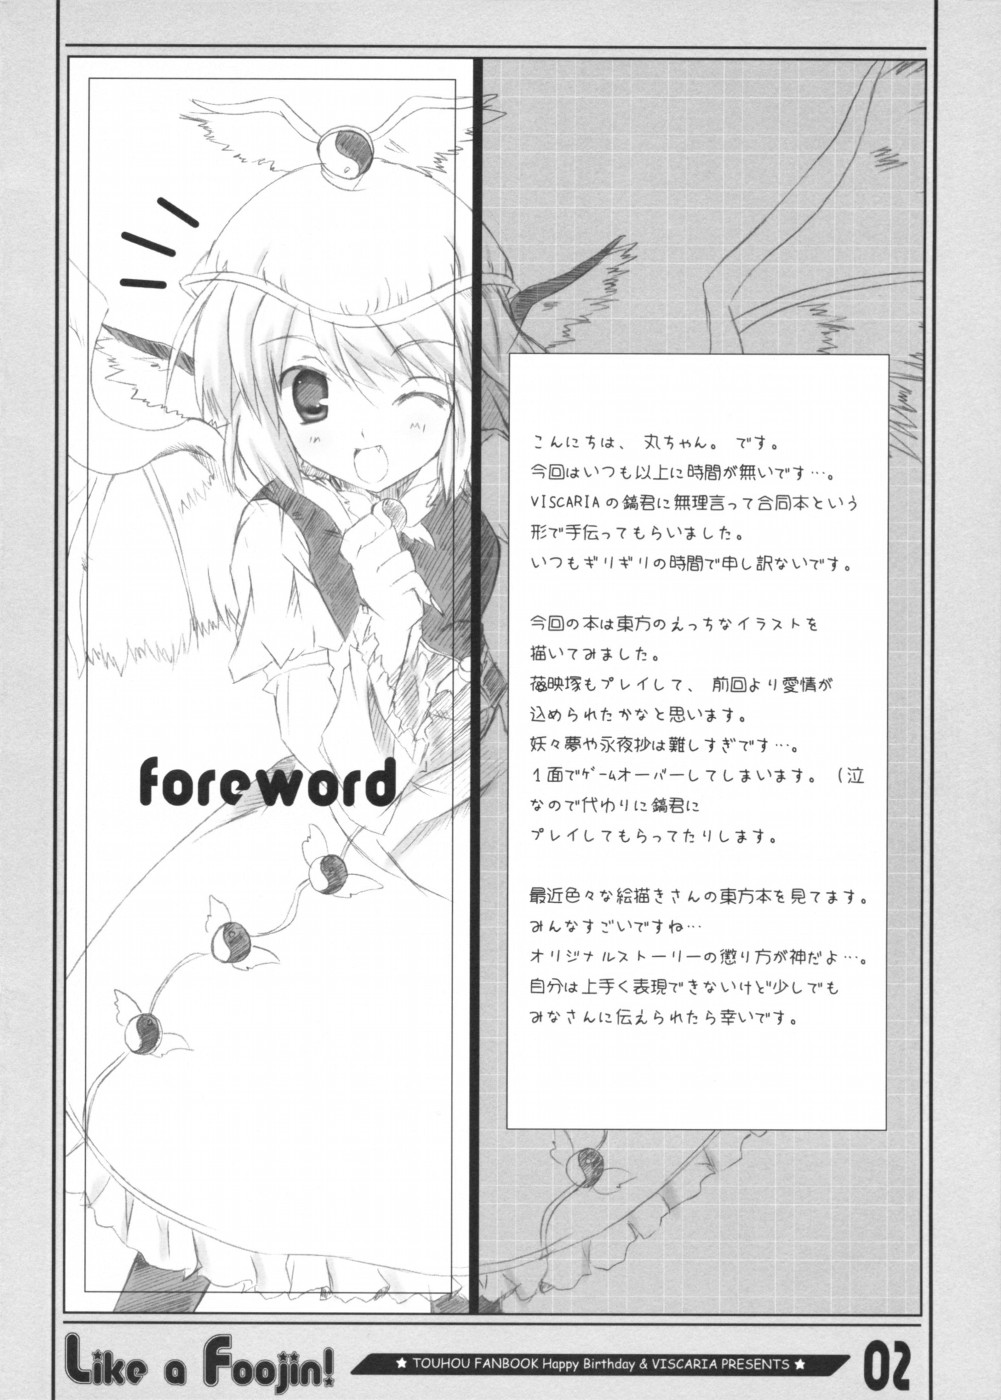 (コミックメモリーズ 03) [HappyBirthday, VISCARIA (アテラ, 丸ちゃん。)] Like a Foojin! (東方Project)